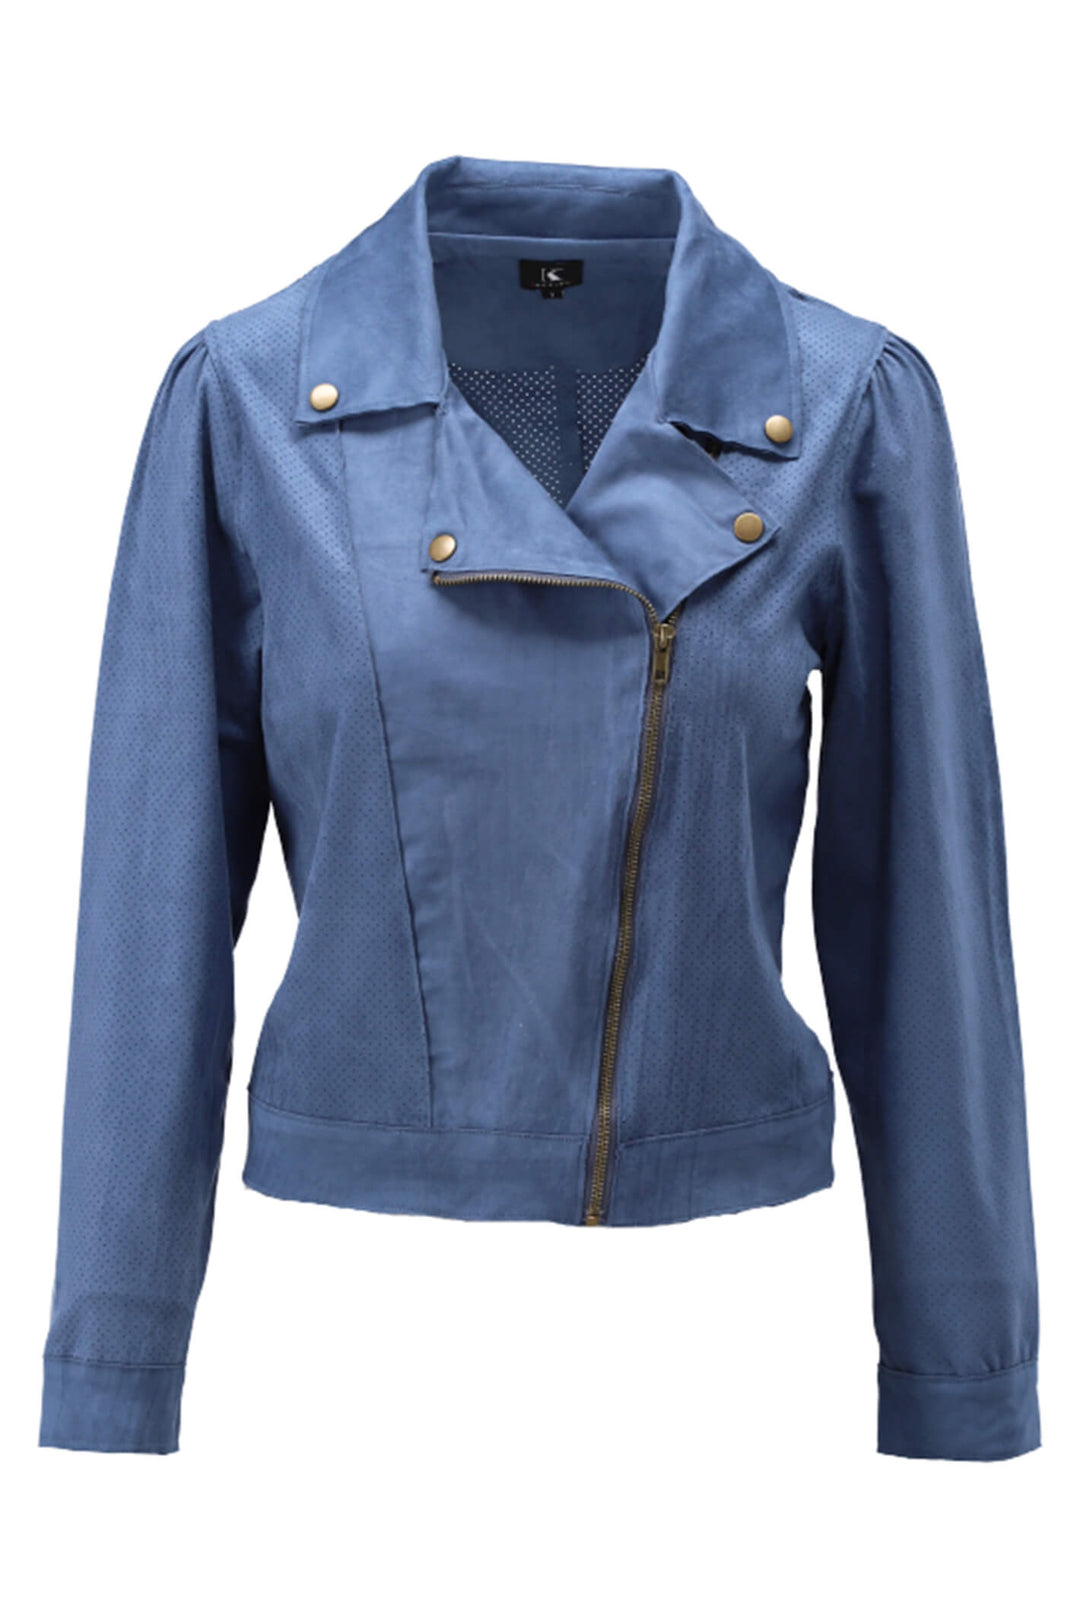 K Design W901 Coronet Blue Faux Suede Jacket - Experience Boutique